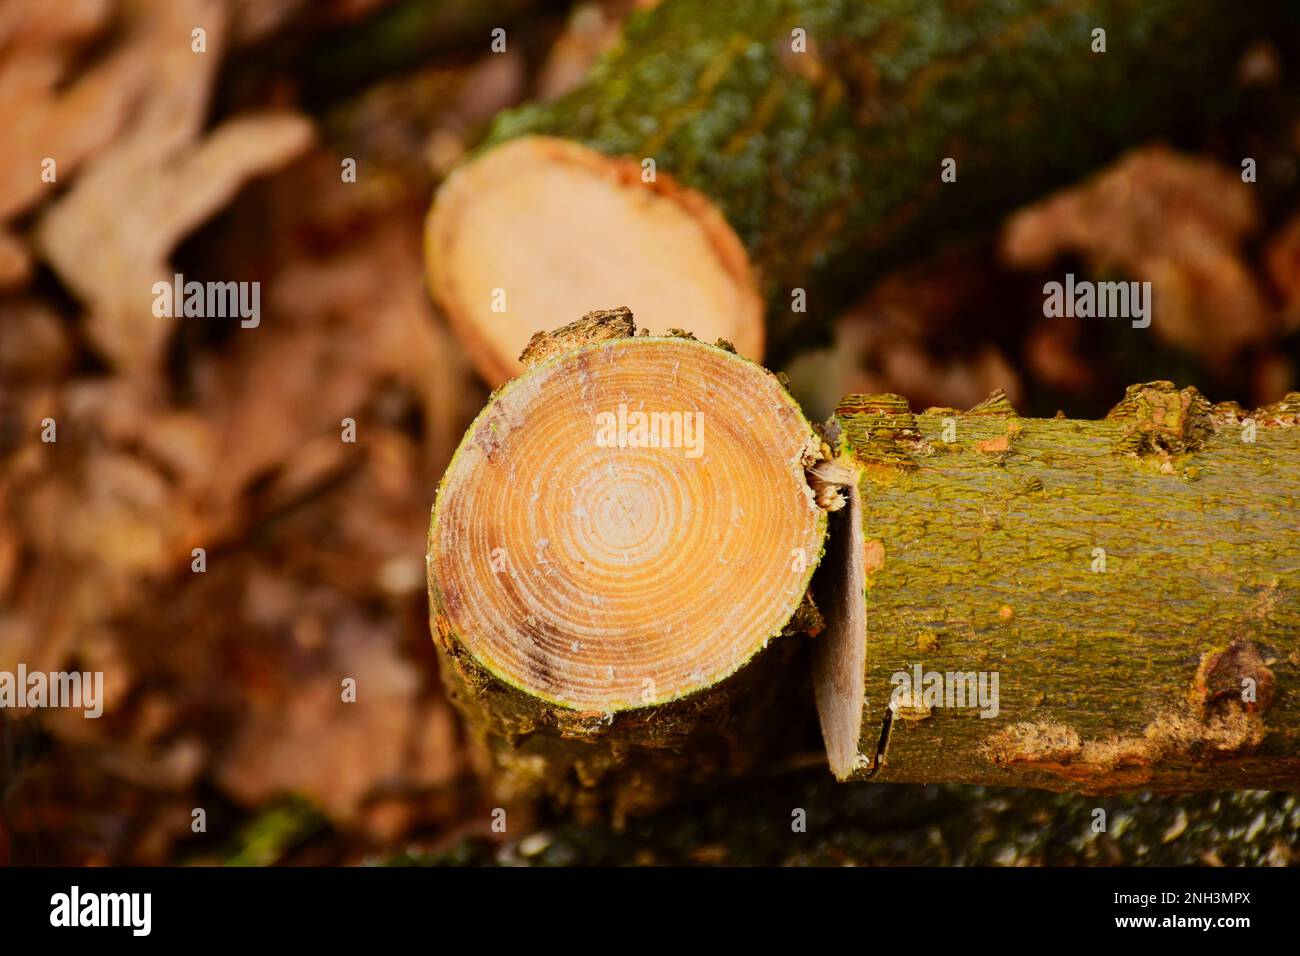 Querschnitt des Baumstamms mit kleinem Durchmesser und grünem Moos auf der Rinde. Baumschnitt- und Brennholzkonzept. Waldszene. Weich verschwommener, trockener Hintergrund Stockfoto